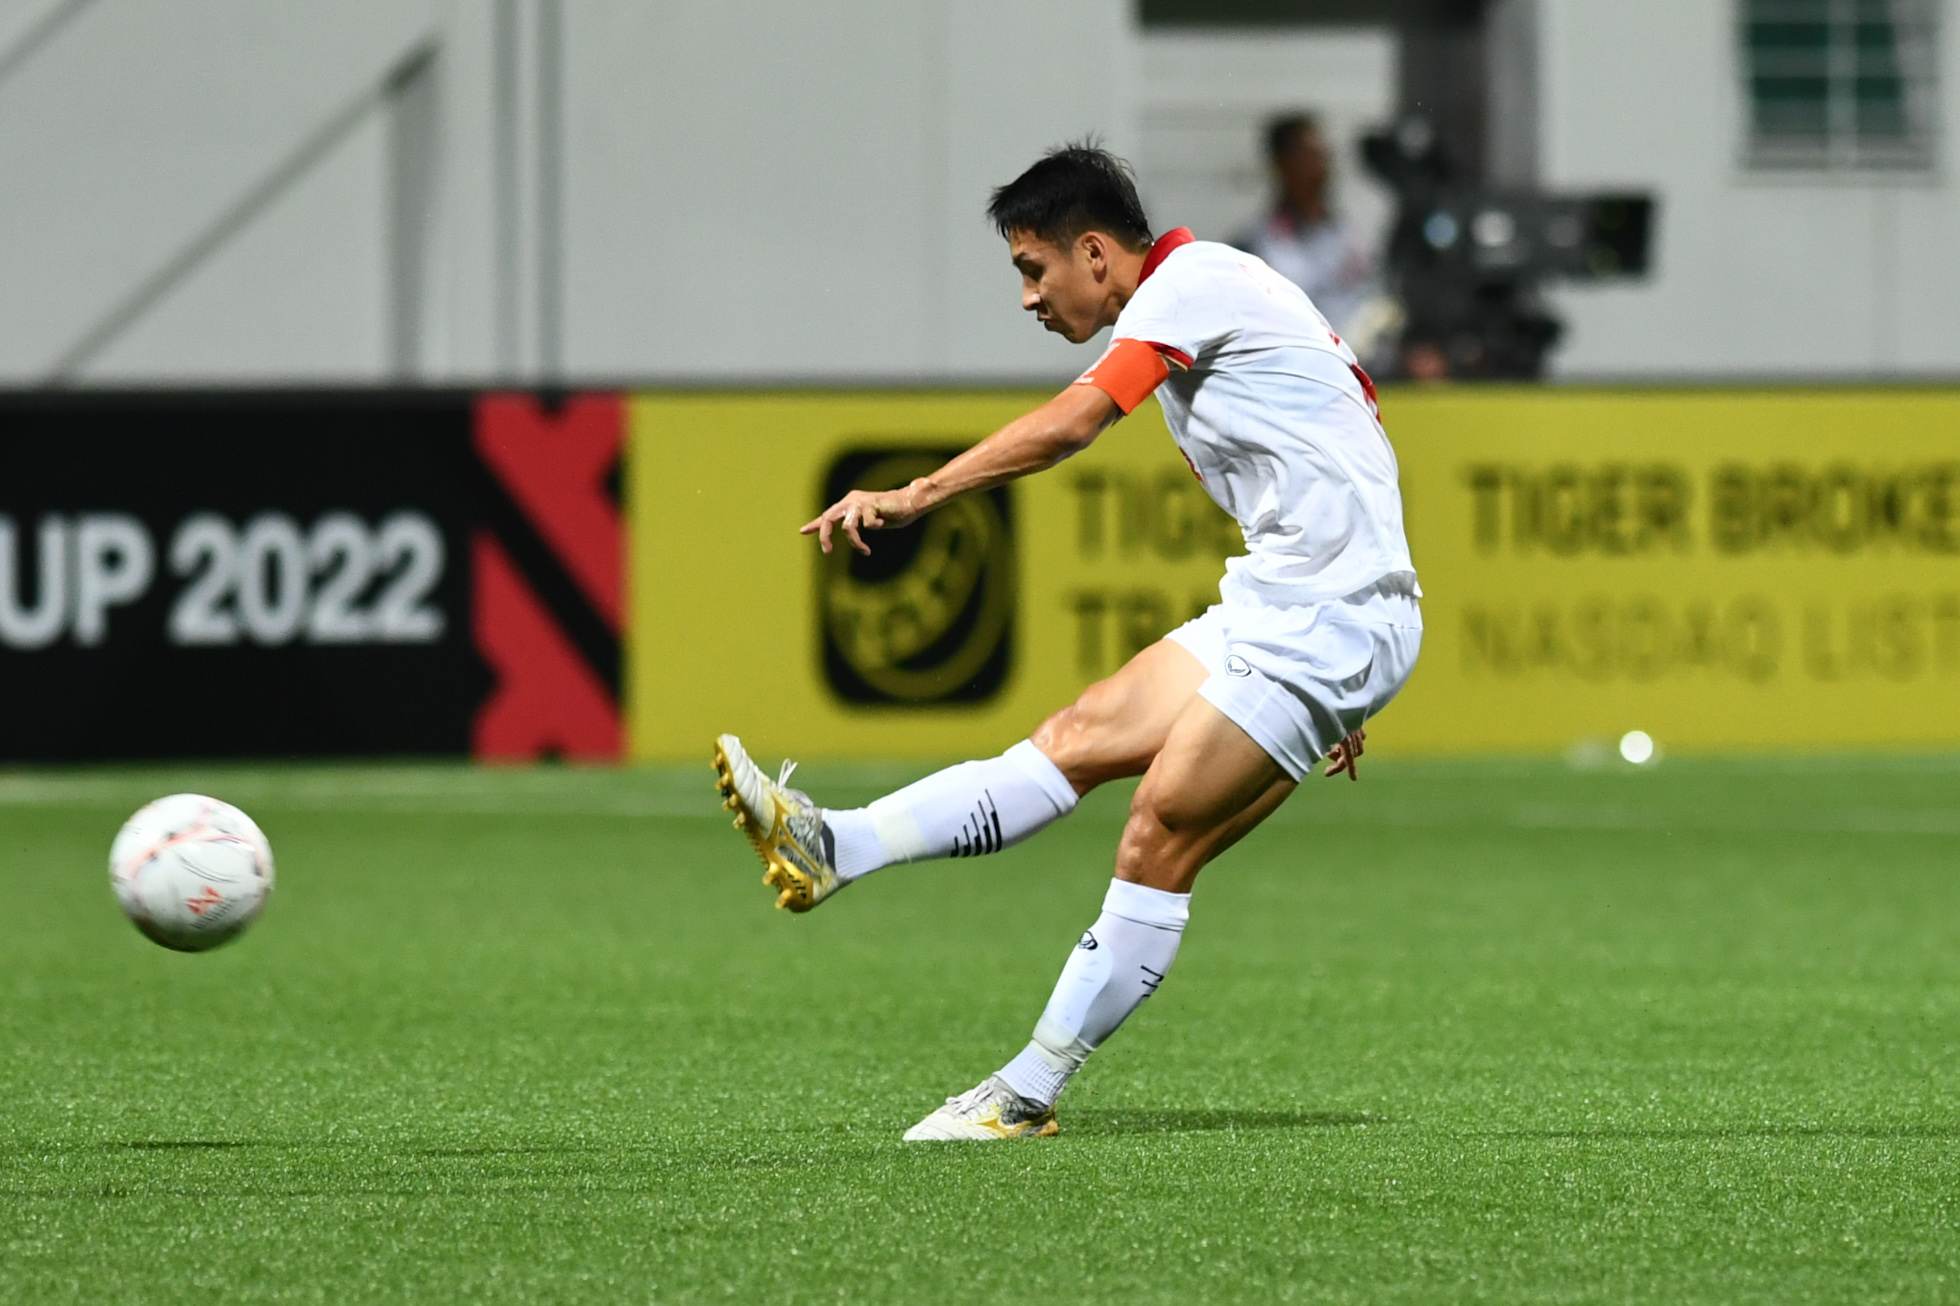 Văn Thanh bị cầu thủ Singapore chơi xấu nhưng trọng tài không thổi phạt - Ảnh 8.